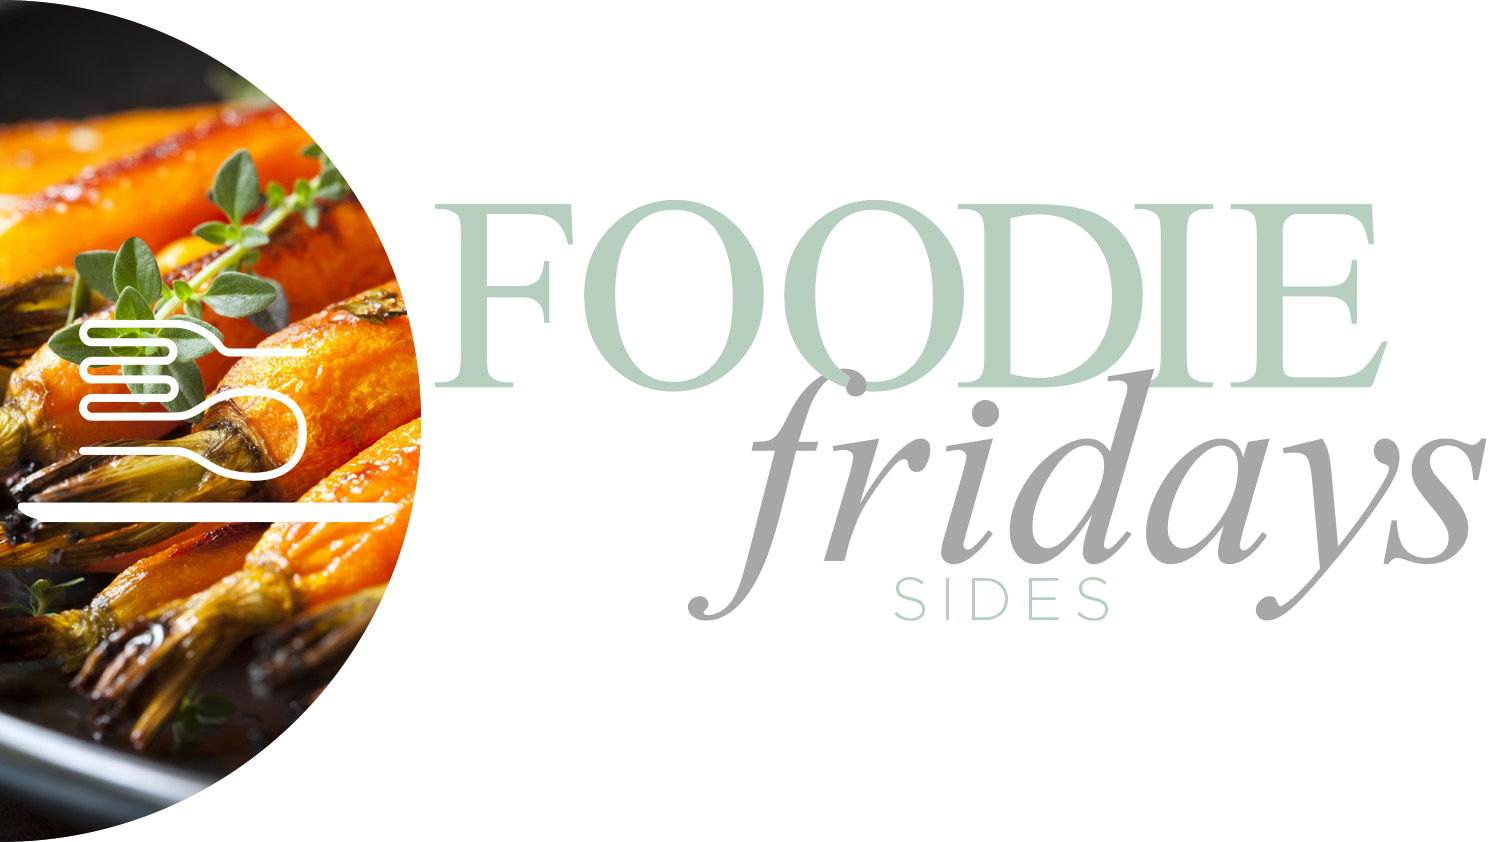 Foodie_Fridays_Sides_EH.jpg